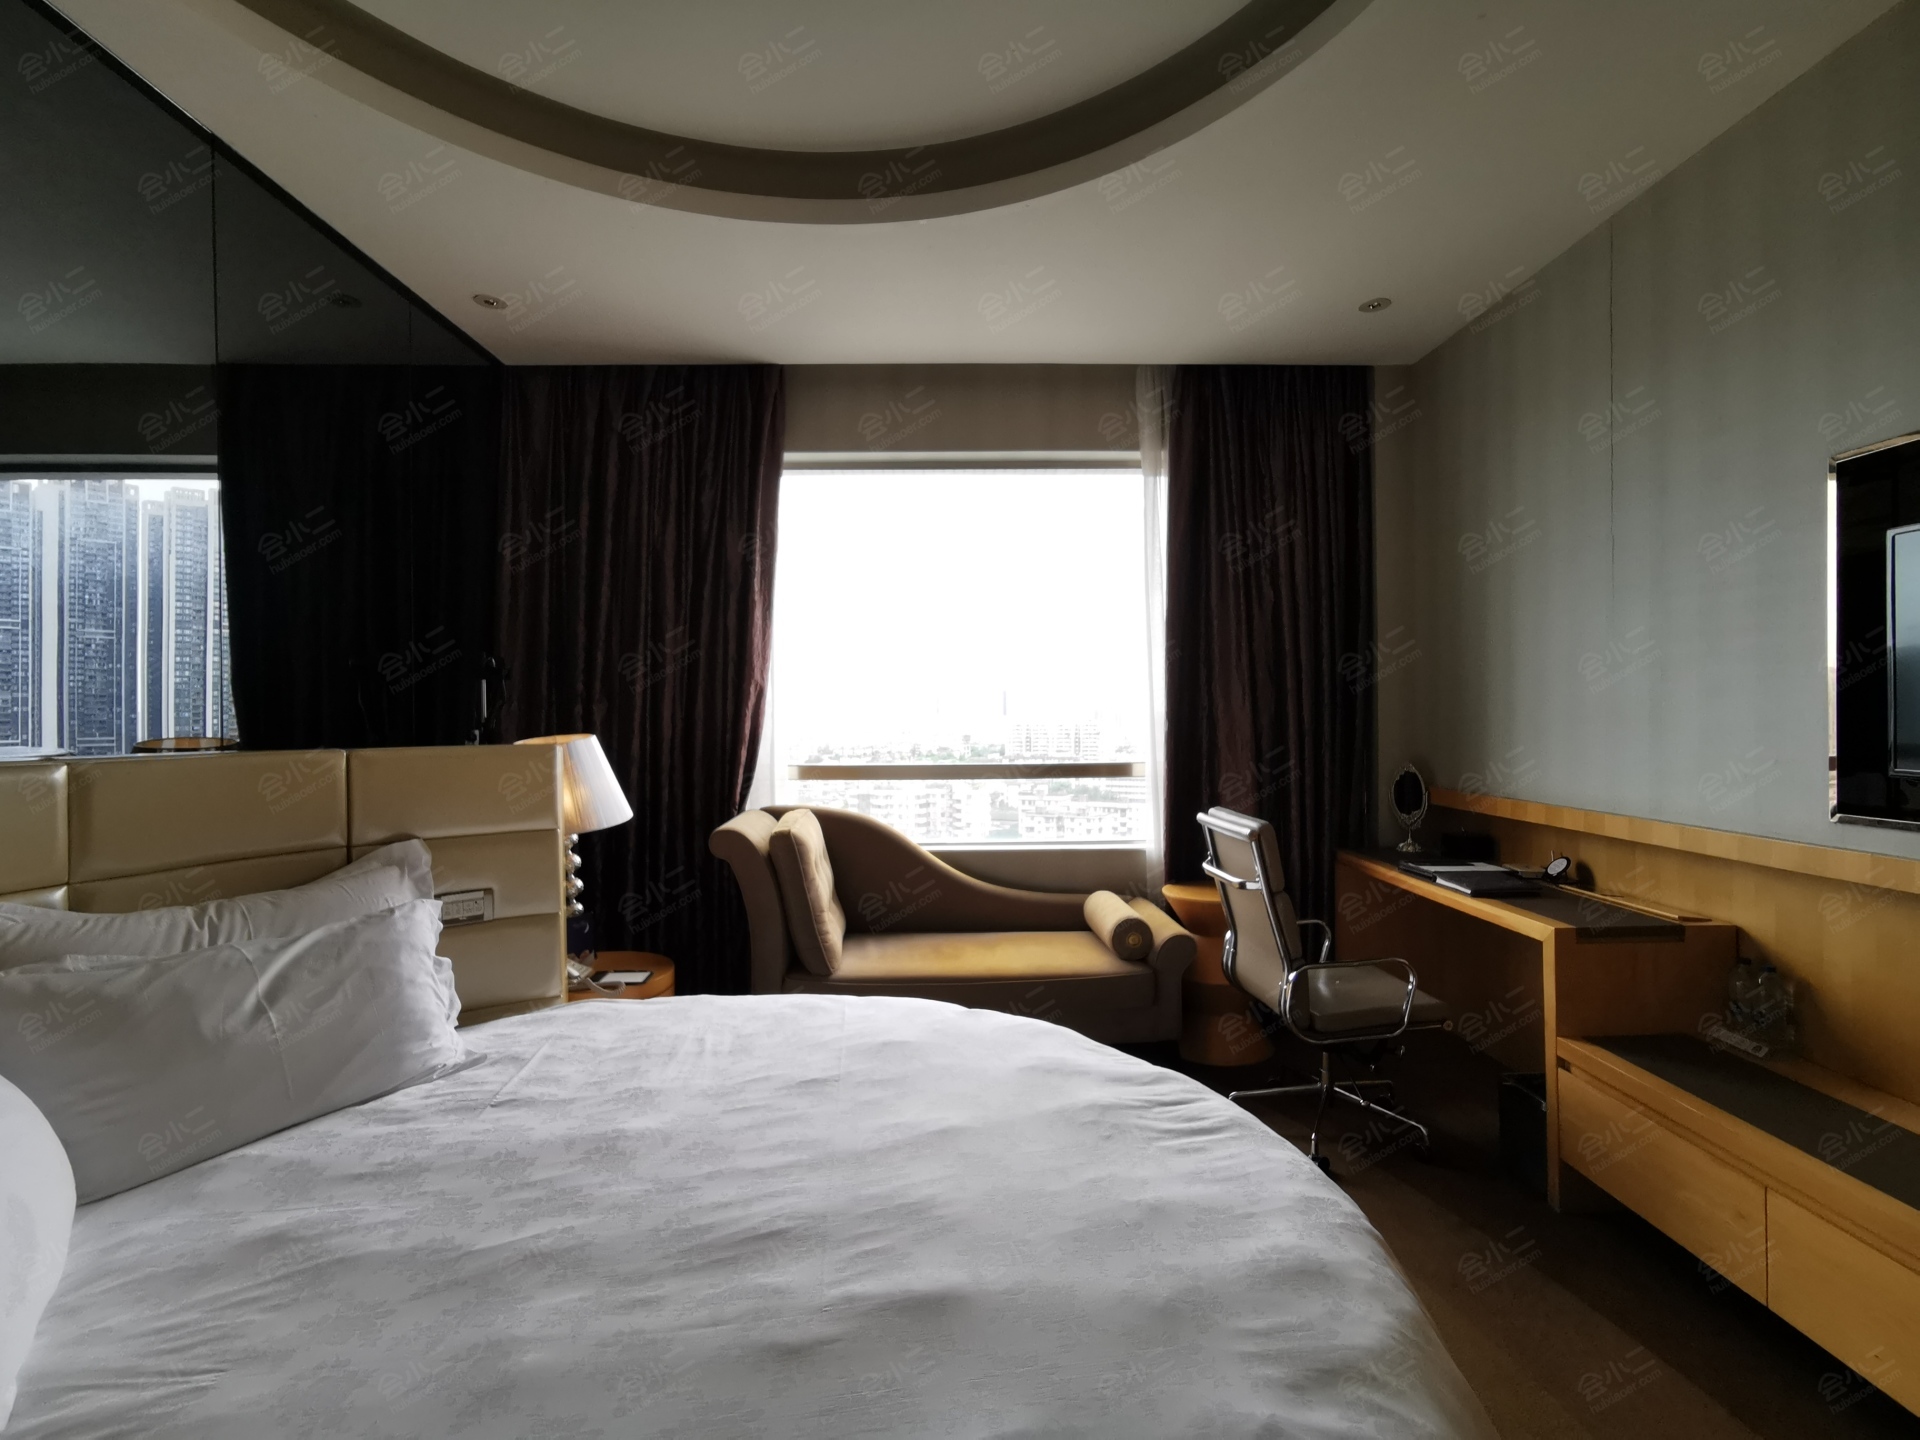 广州卡威尔酒店几星级图片